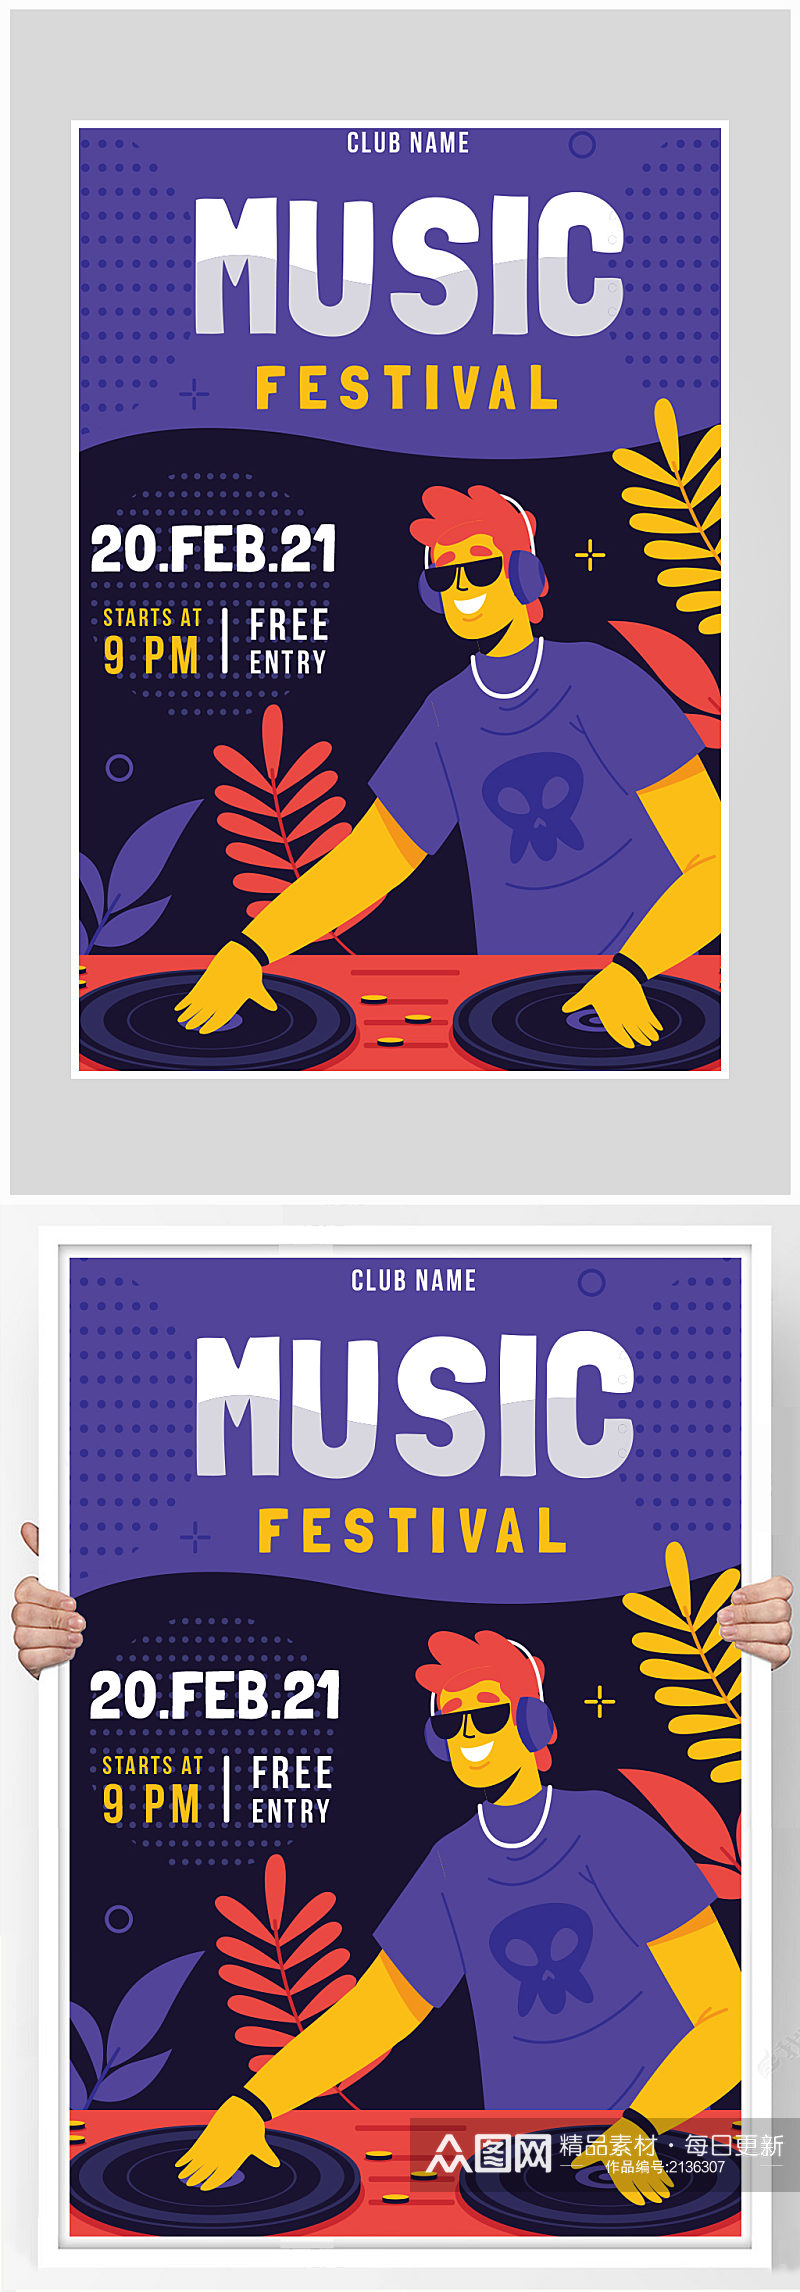 创意质感扁平化音乐派对海报设计素材